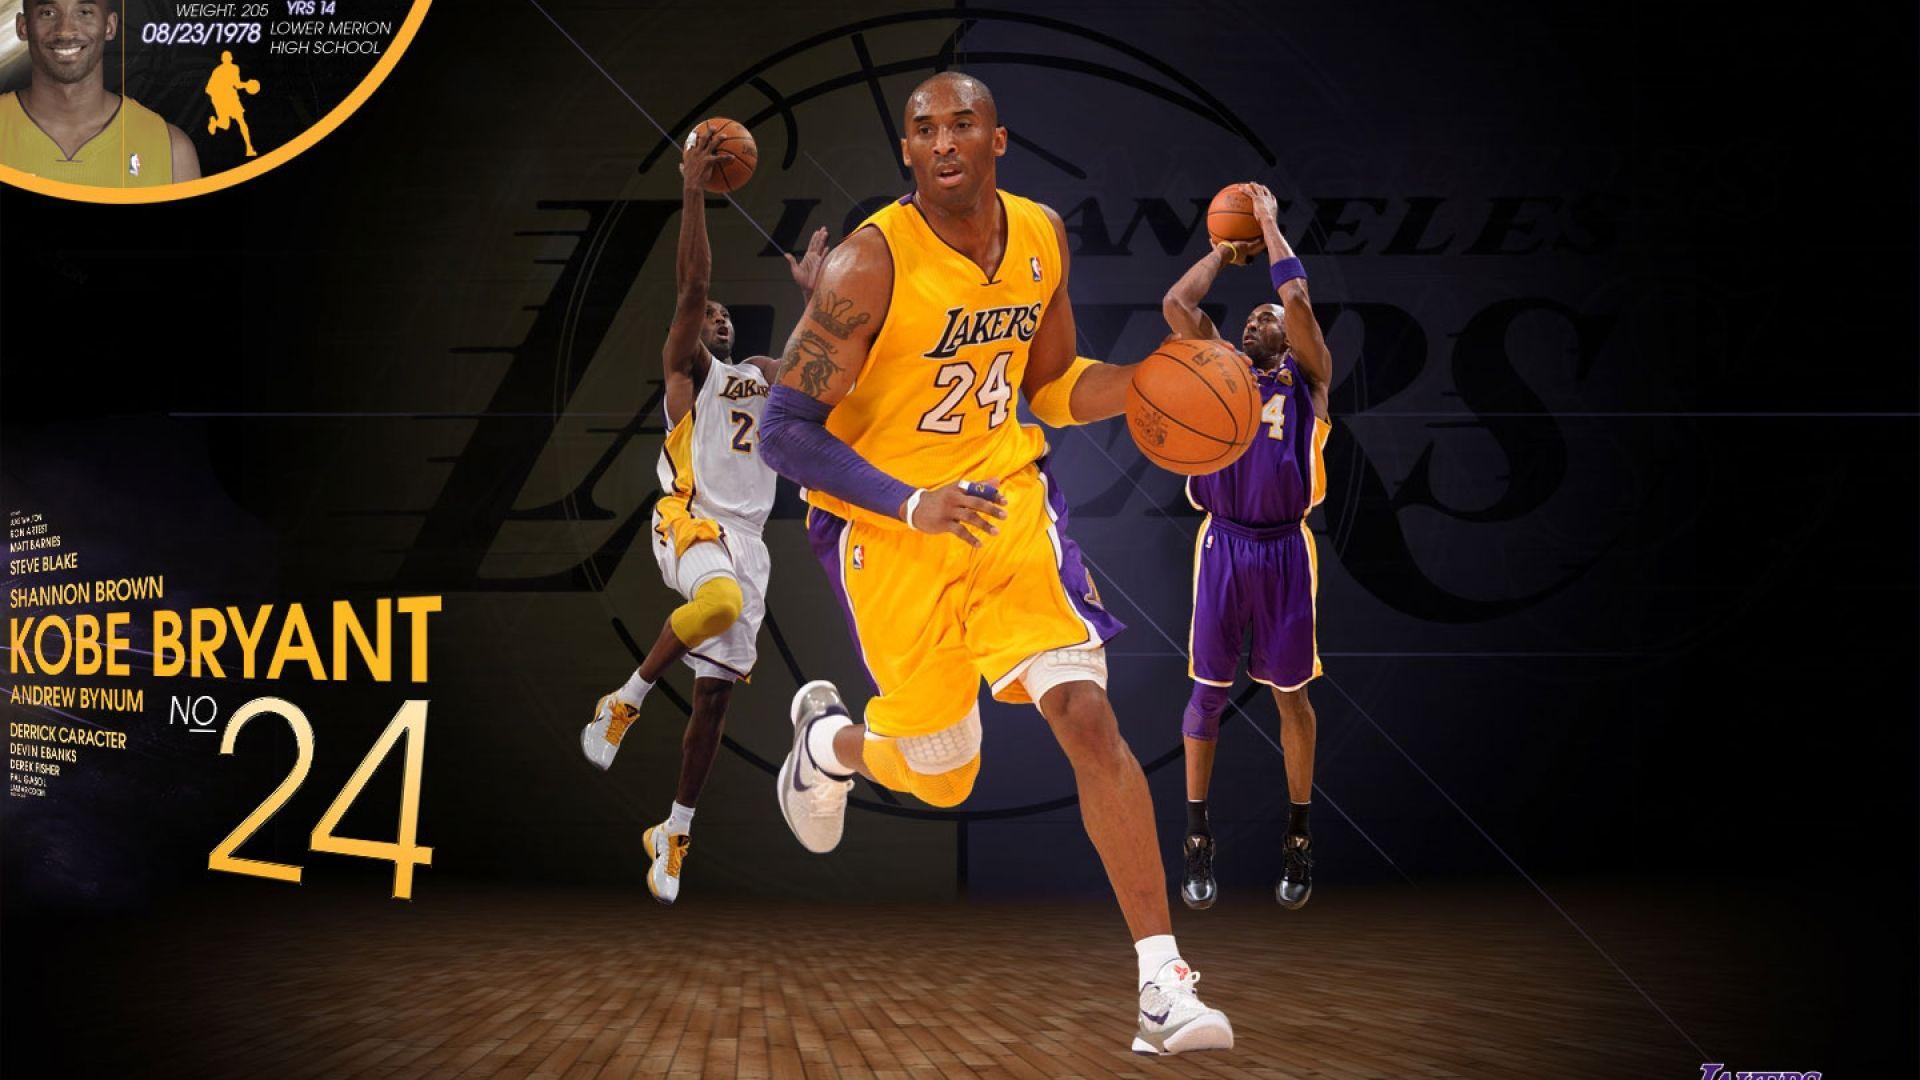 Kobe Bryant Lakers 2012 wallpaper